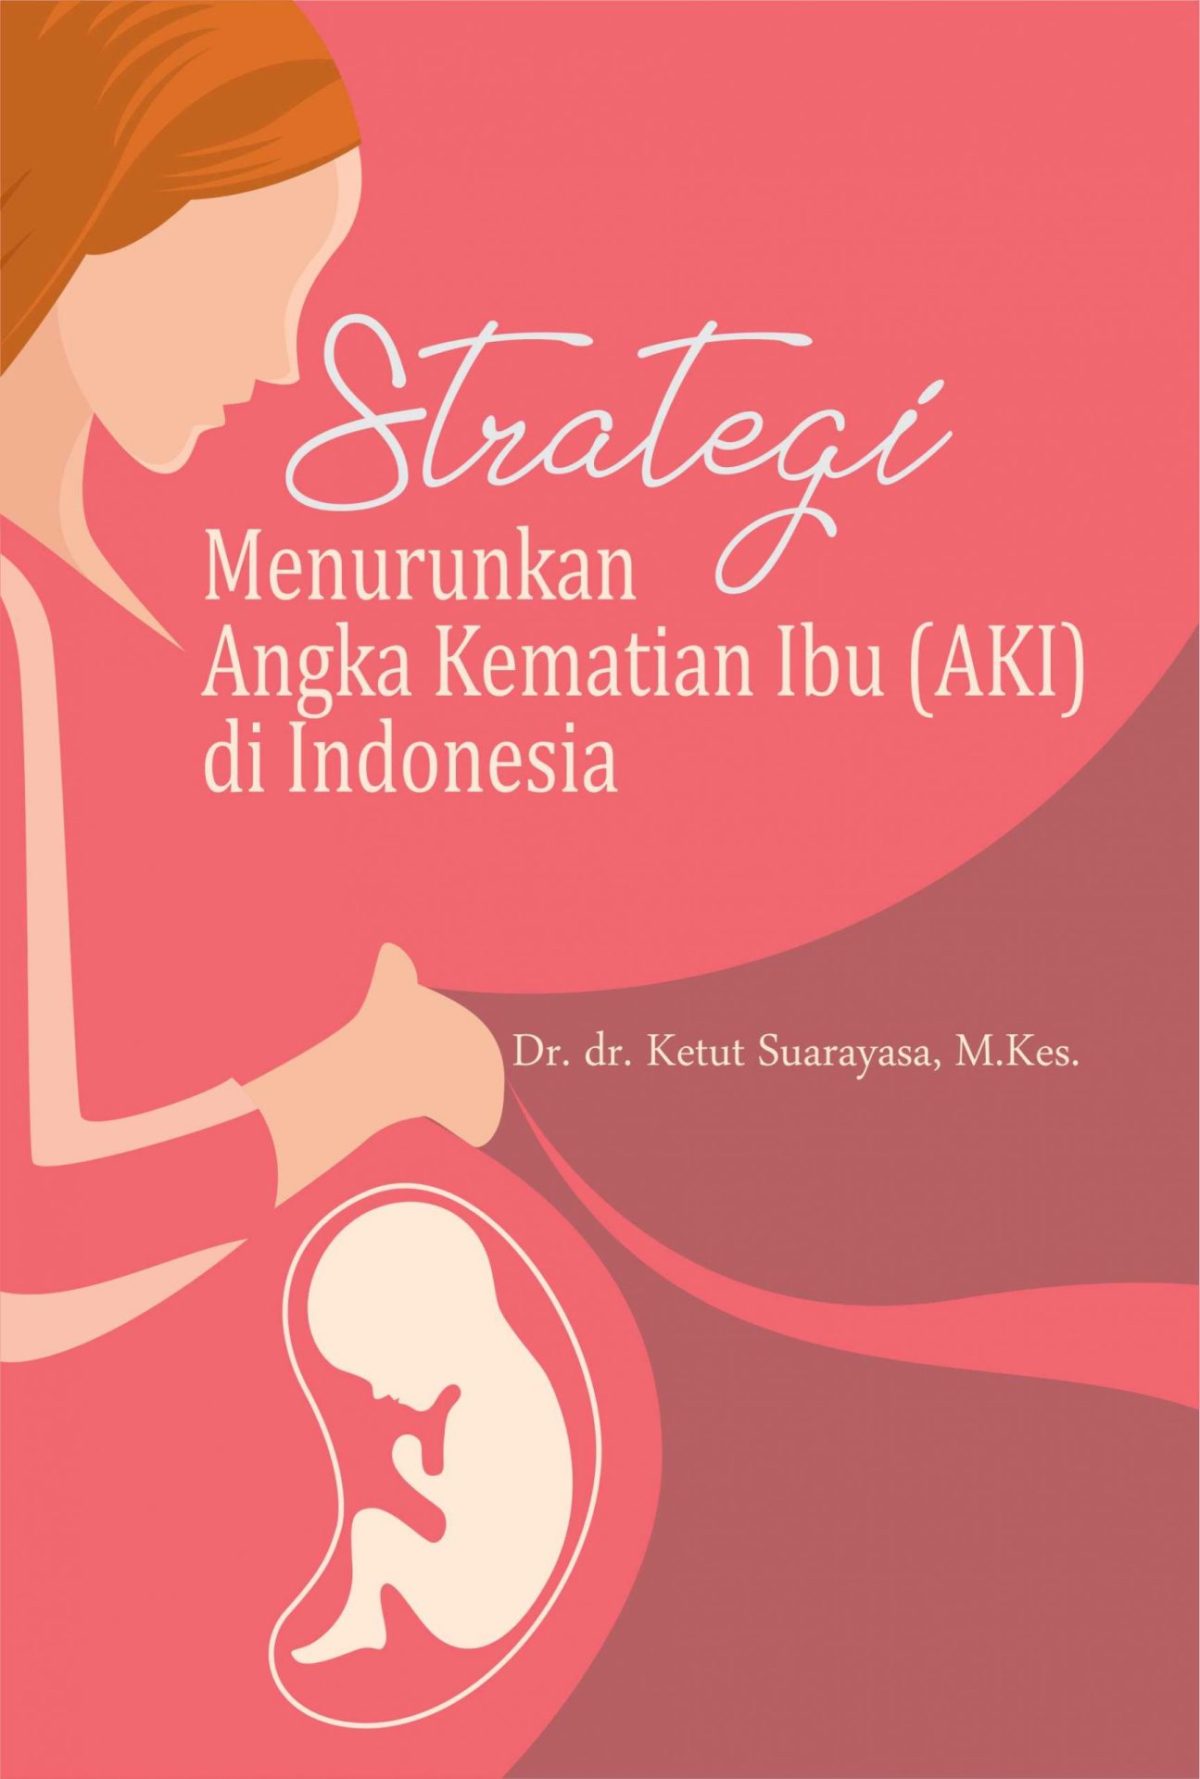 Strategi Menurunkan Angka Kematian Ibu (AKI) di Indonesia